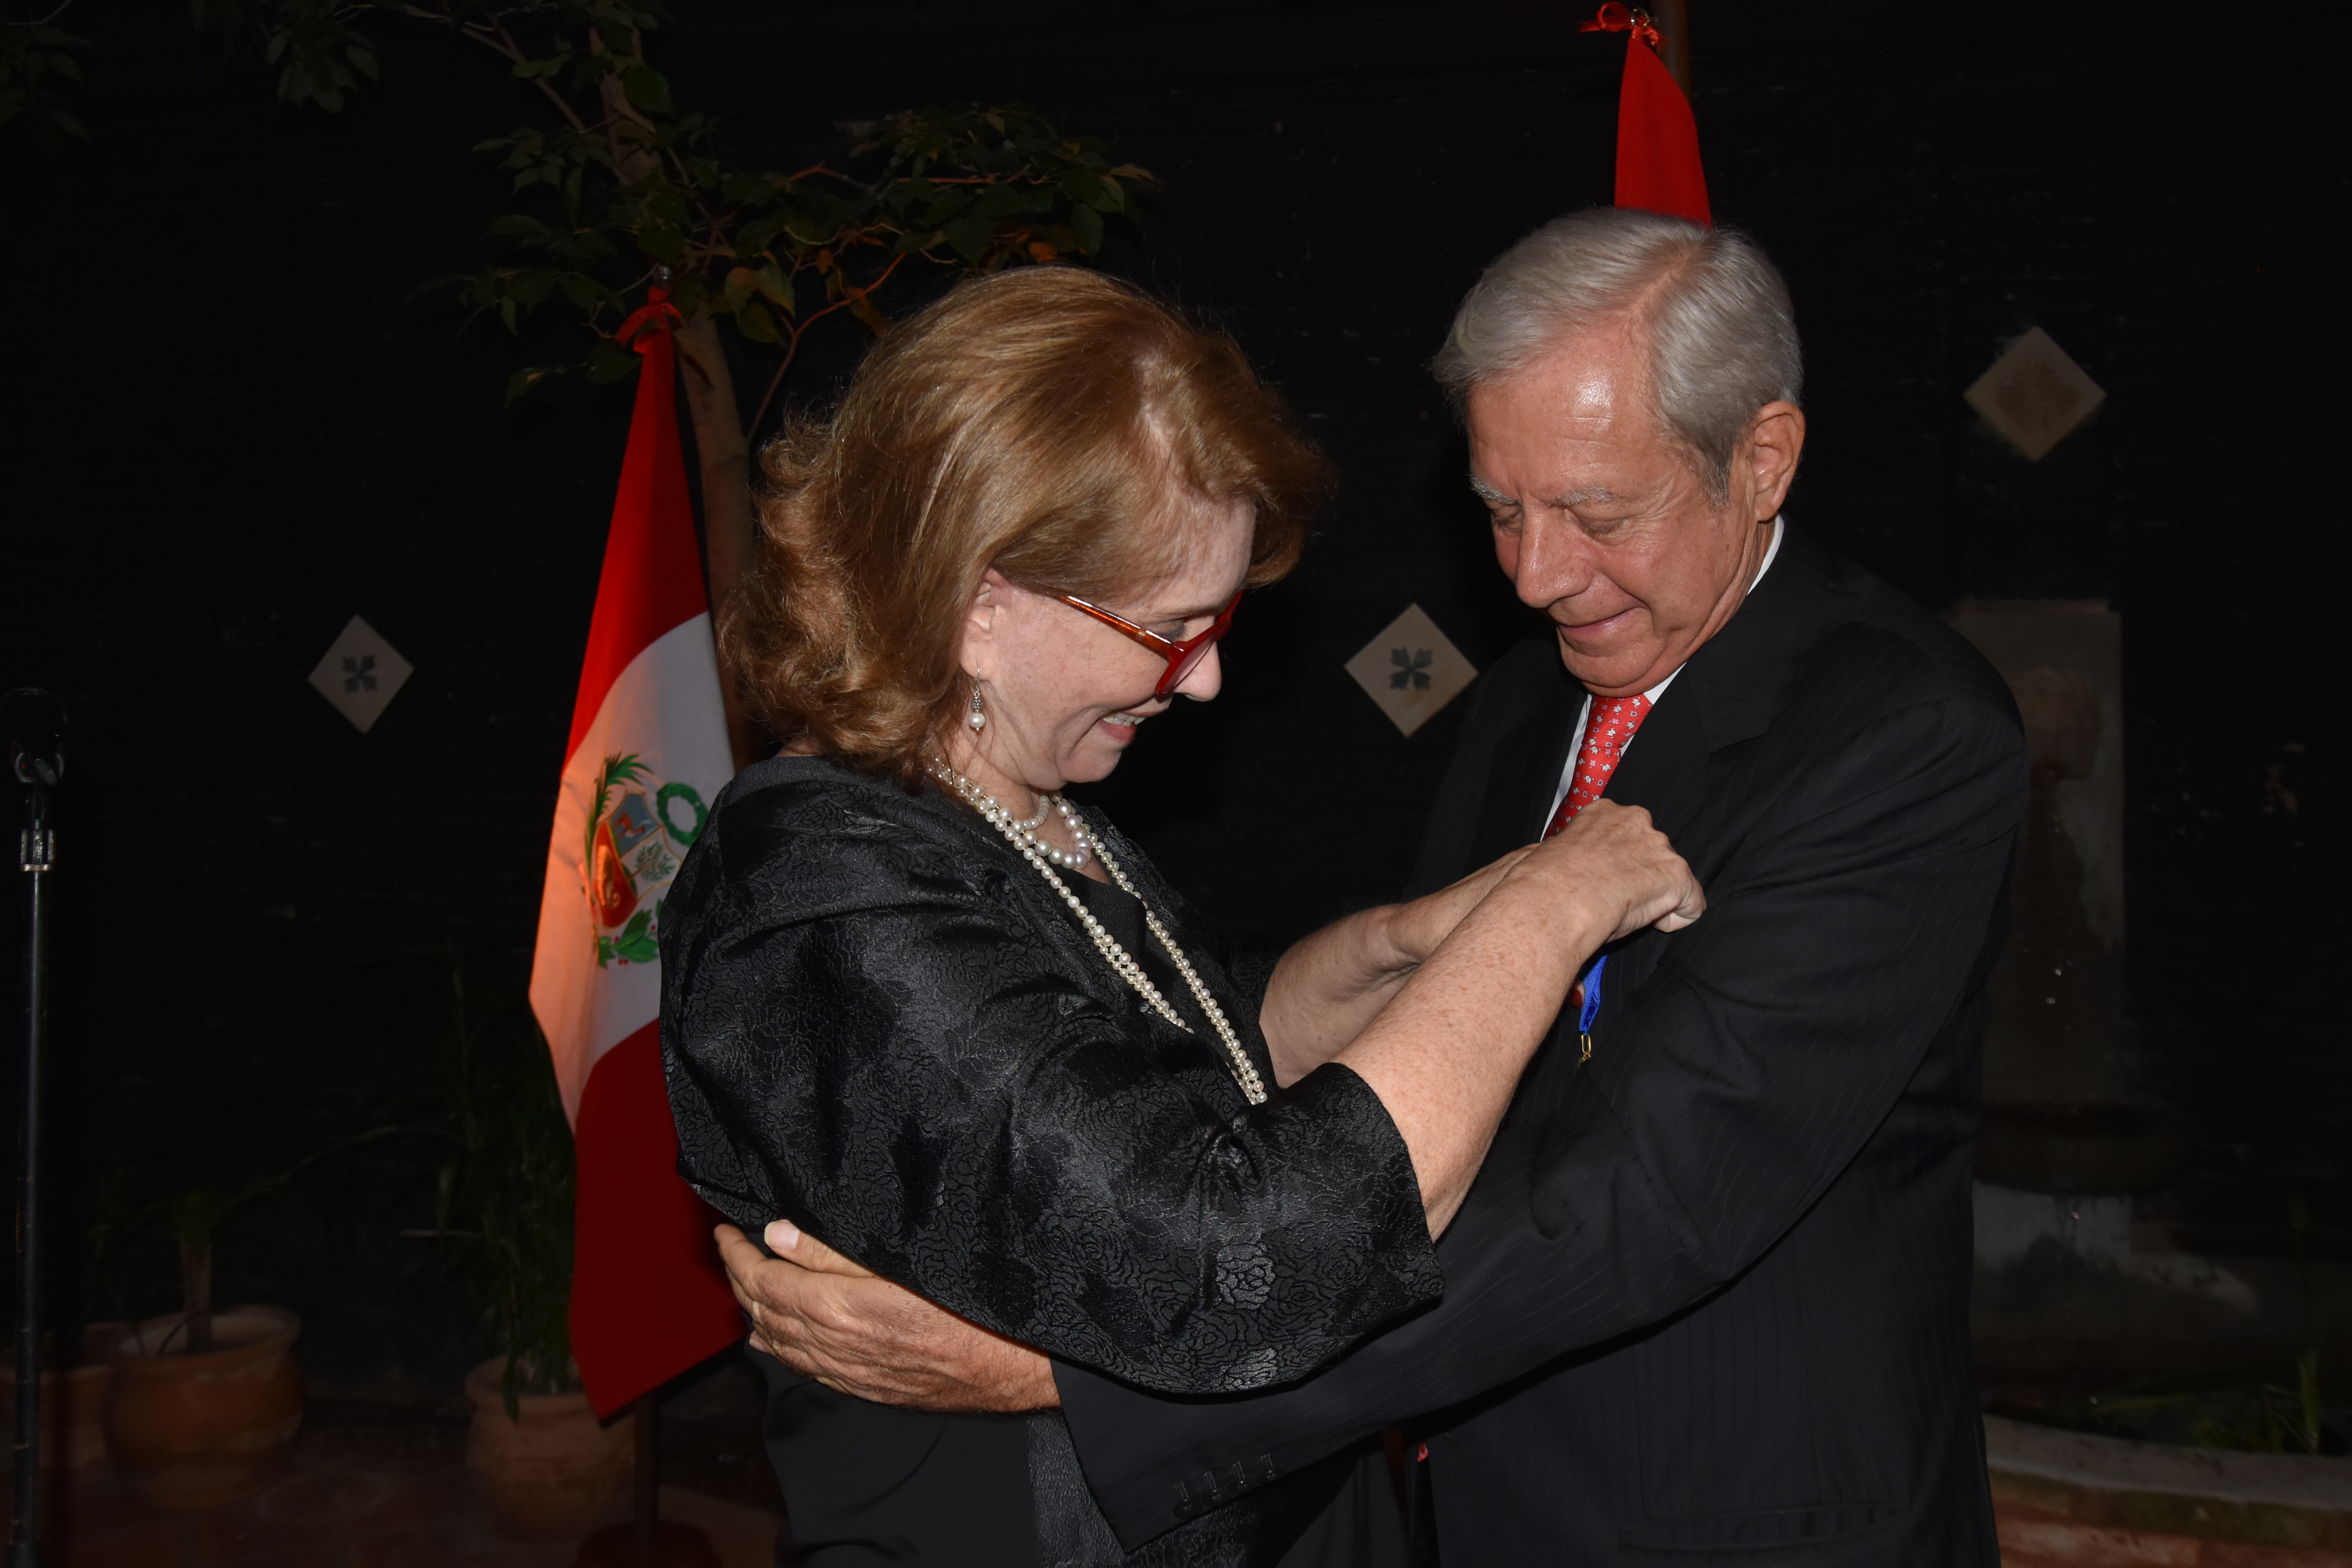 Condecoraron con la “Orden al Mérito del Servicio Diplomático” a Esteban Morábito Heilbrunn, cónsul honorario del Perú en Asunción